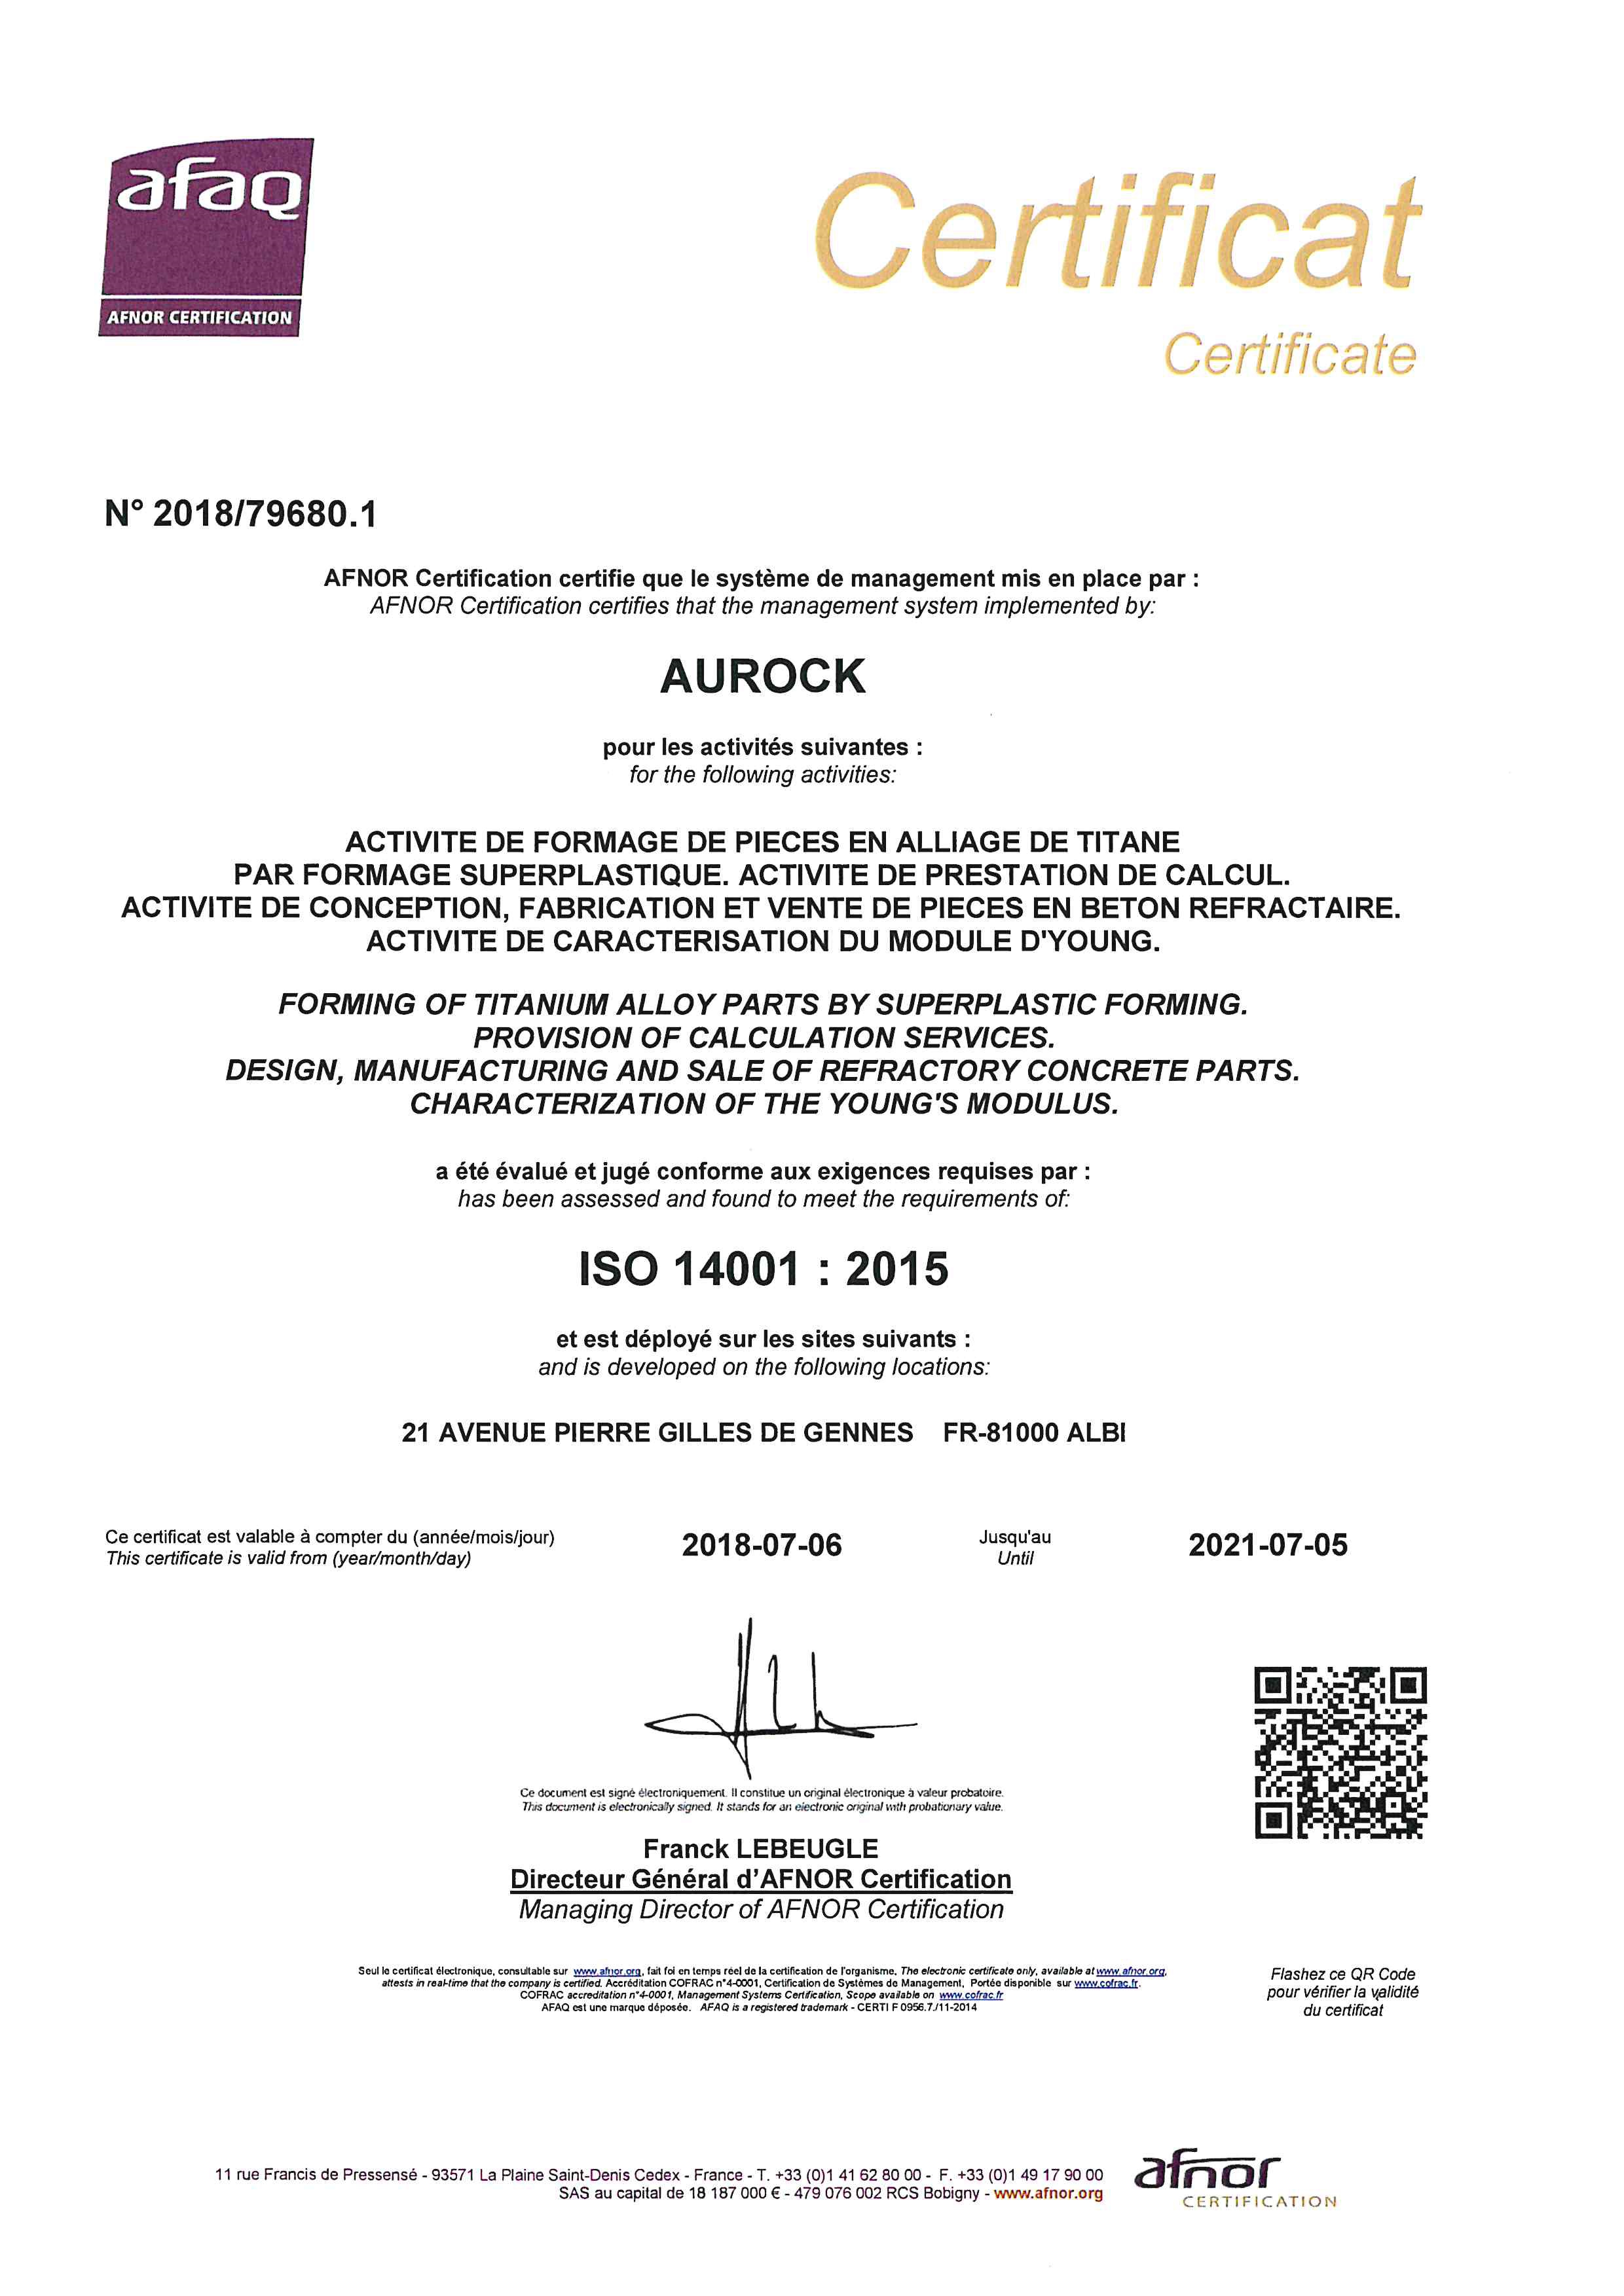 CertificatISO14001Aurock